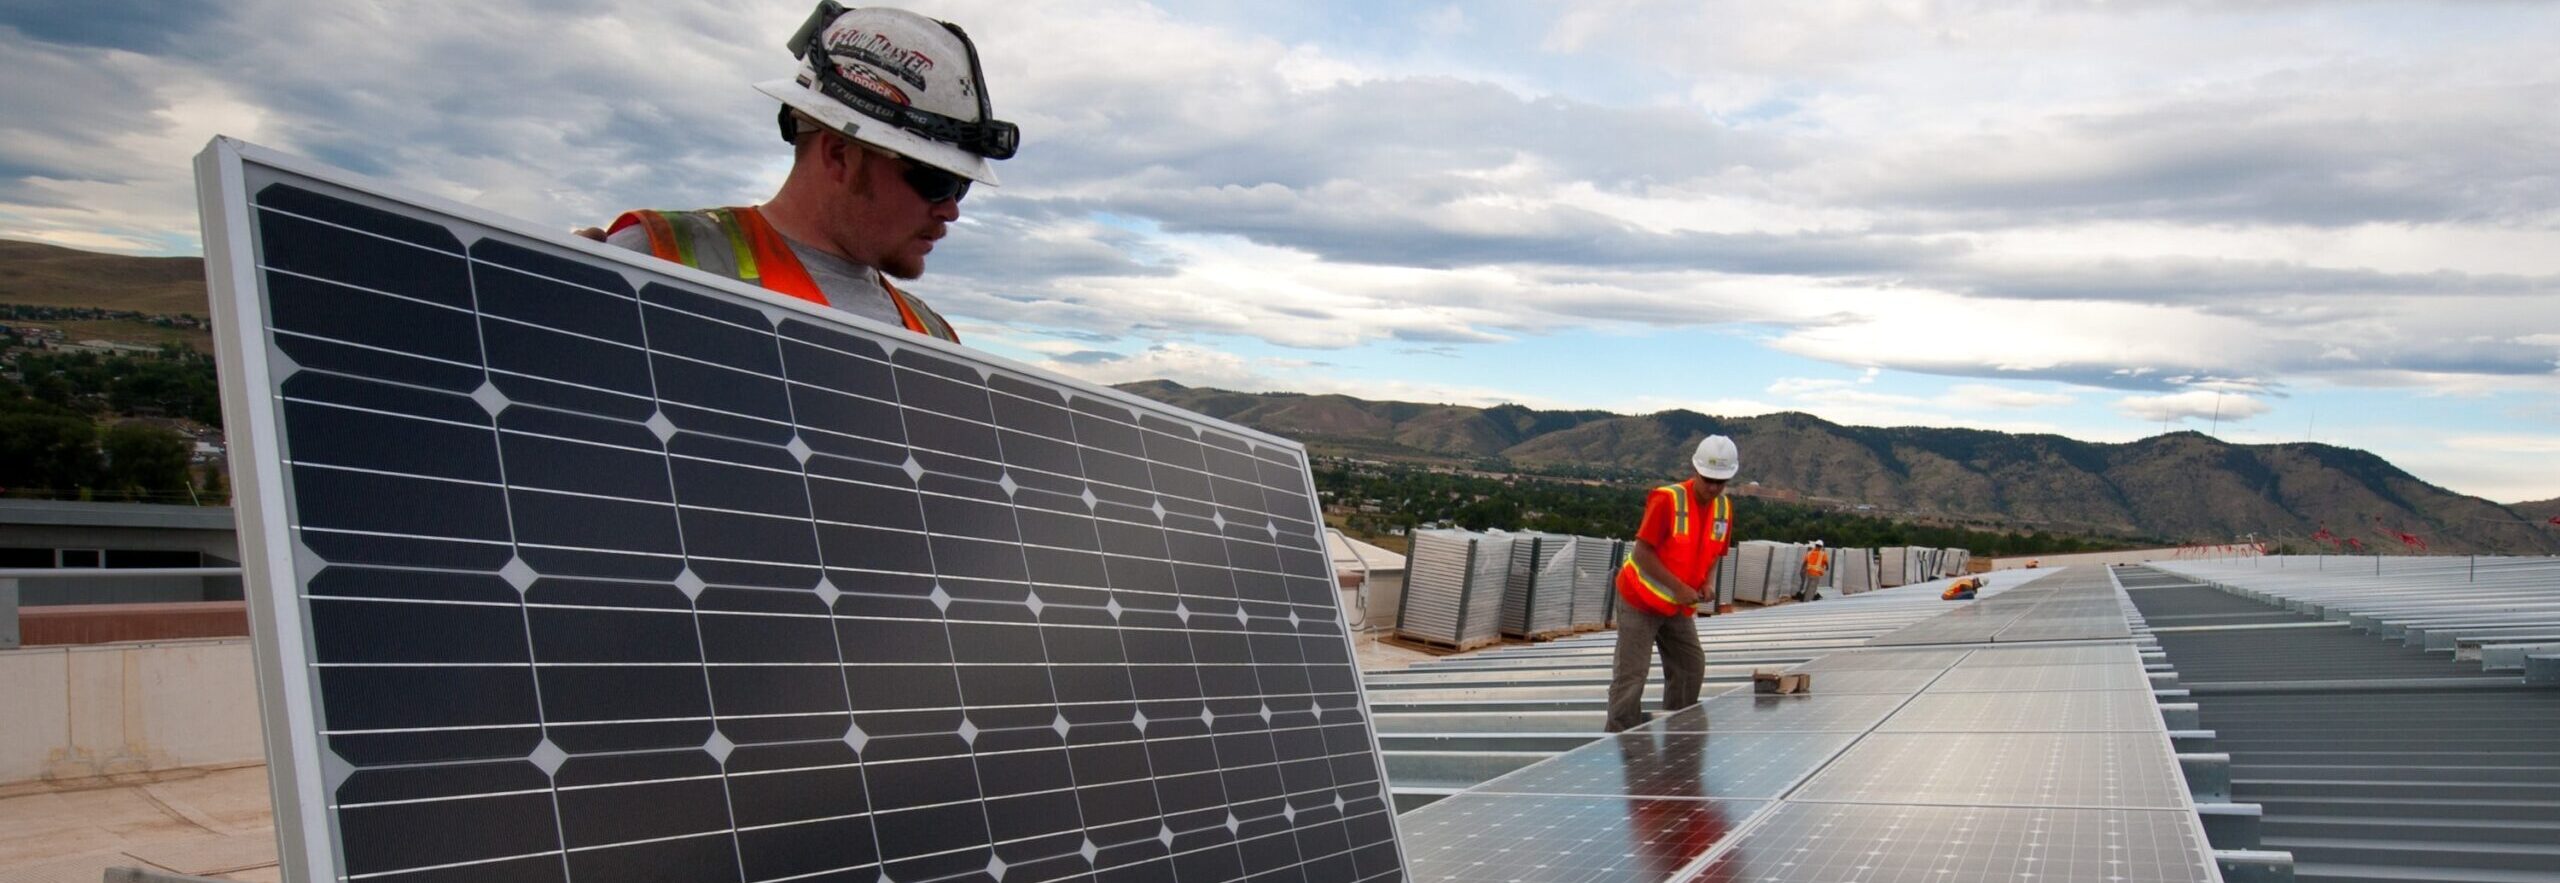 Movendo Placas Solares - Franquia de energia solar: 8 coisas que você precisa saber sobre esse investimento